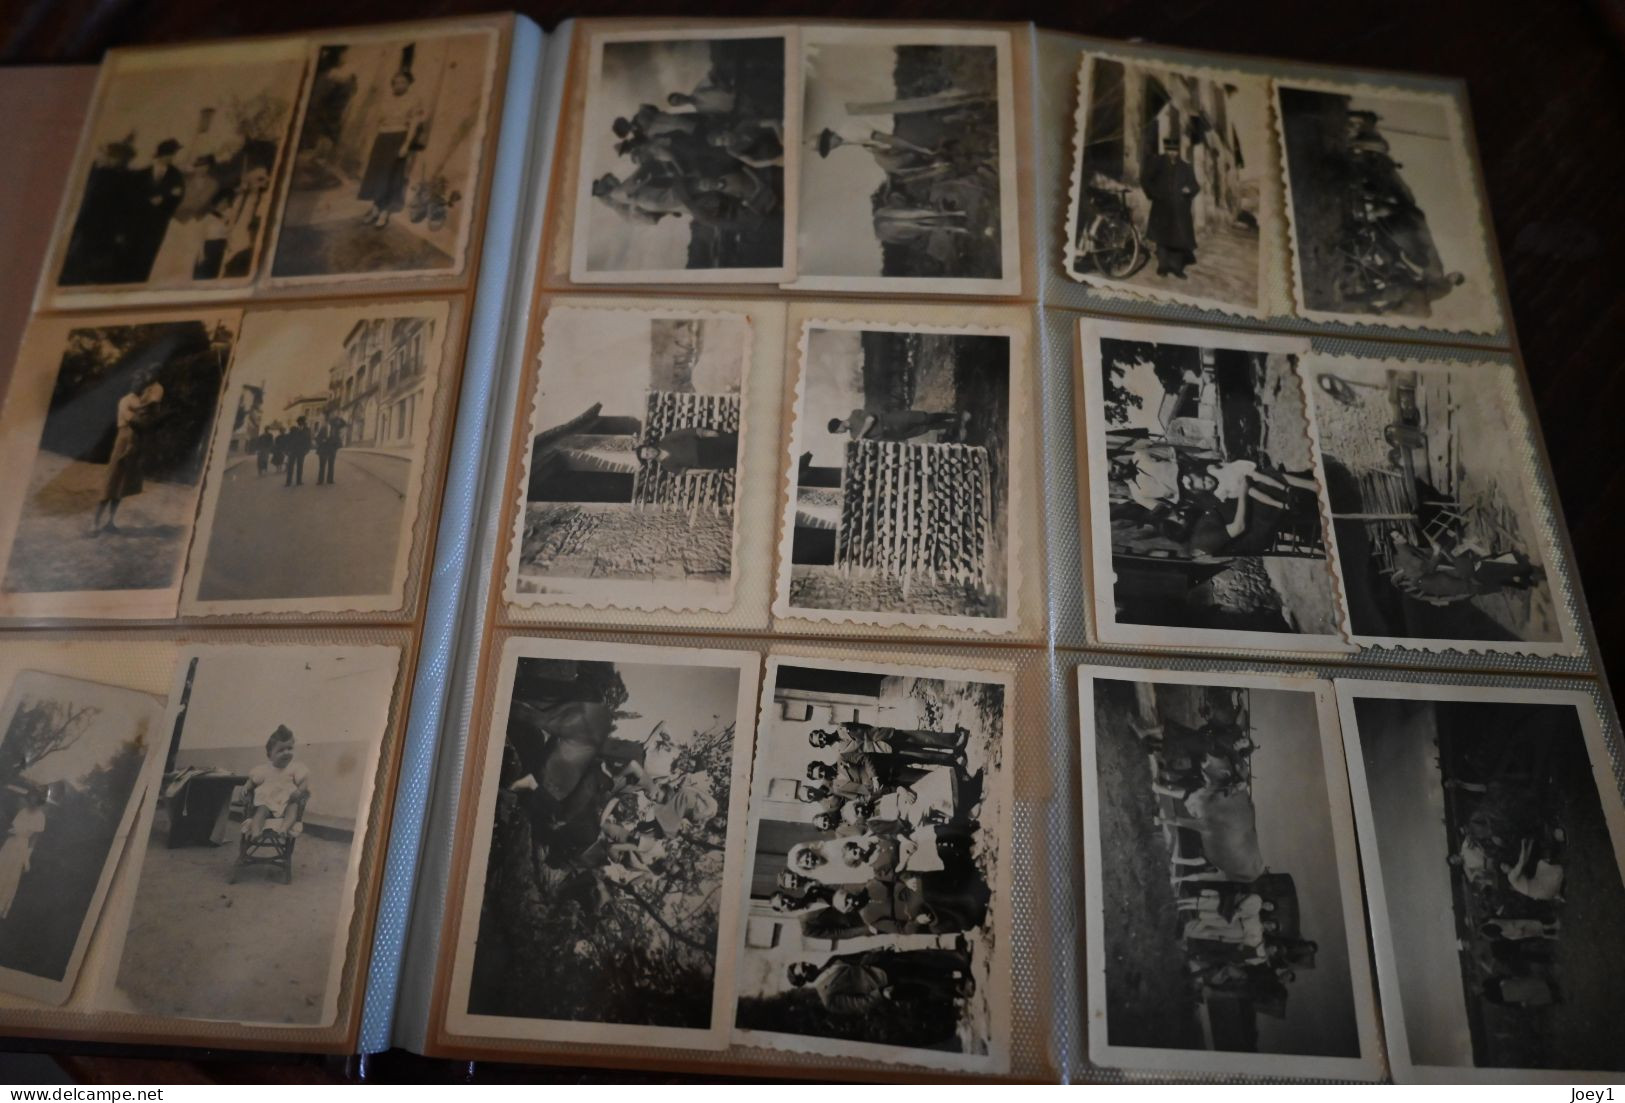 Album 180 photos de familles, FFI du sud ouest avec résistants ,militaires, ferme et vendange.